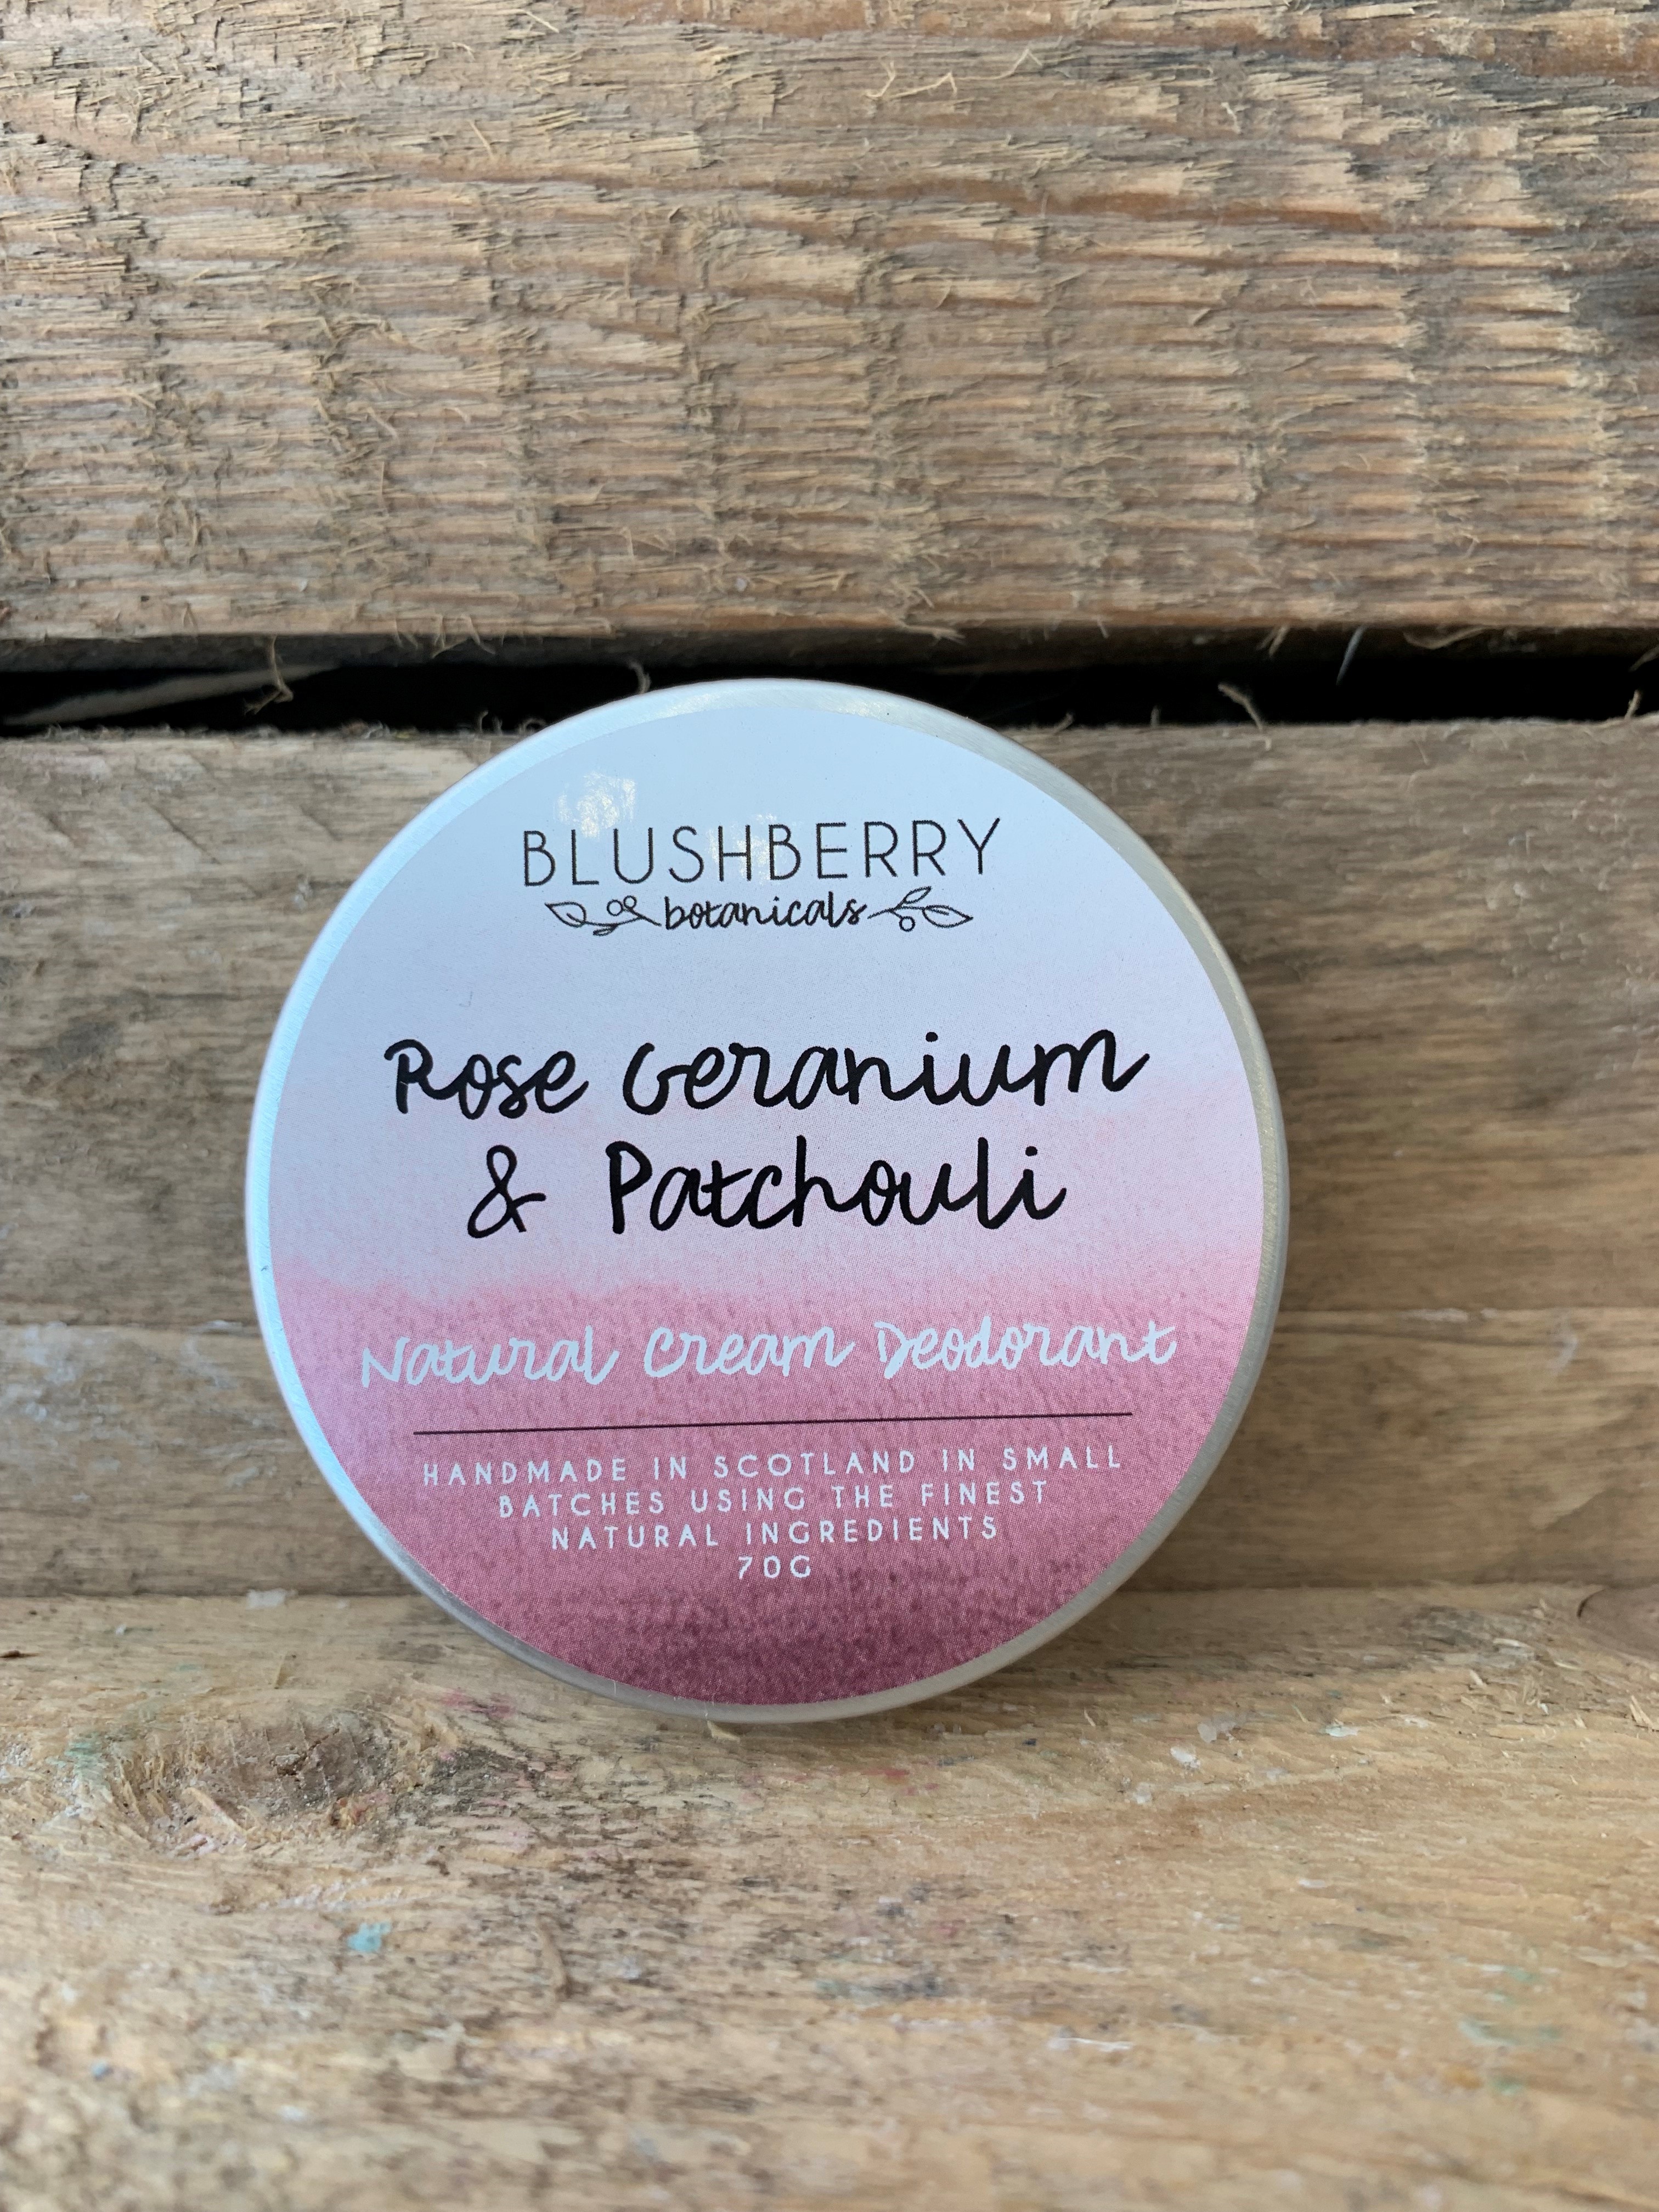 Rose Geranium and Patchouli Blushberry Botanicals Natural Cream Deodorant